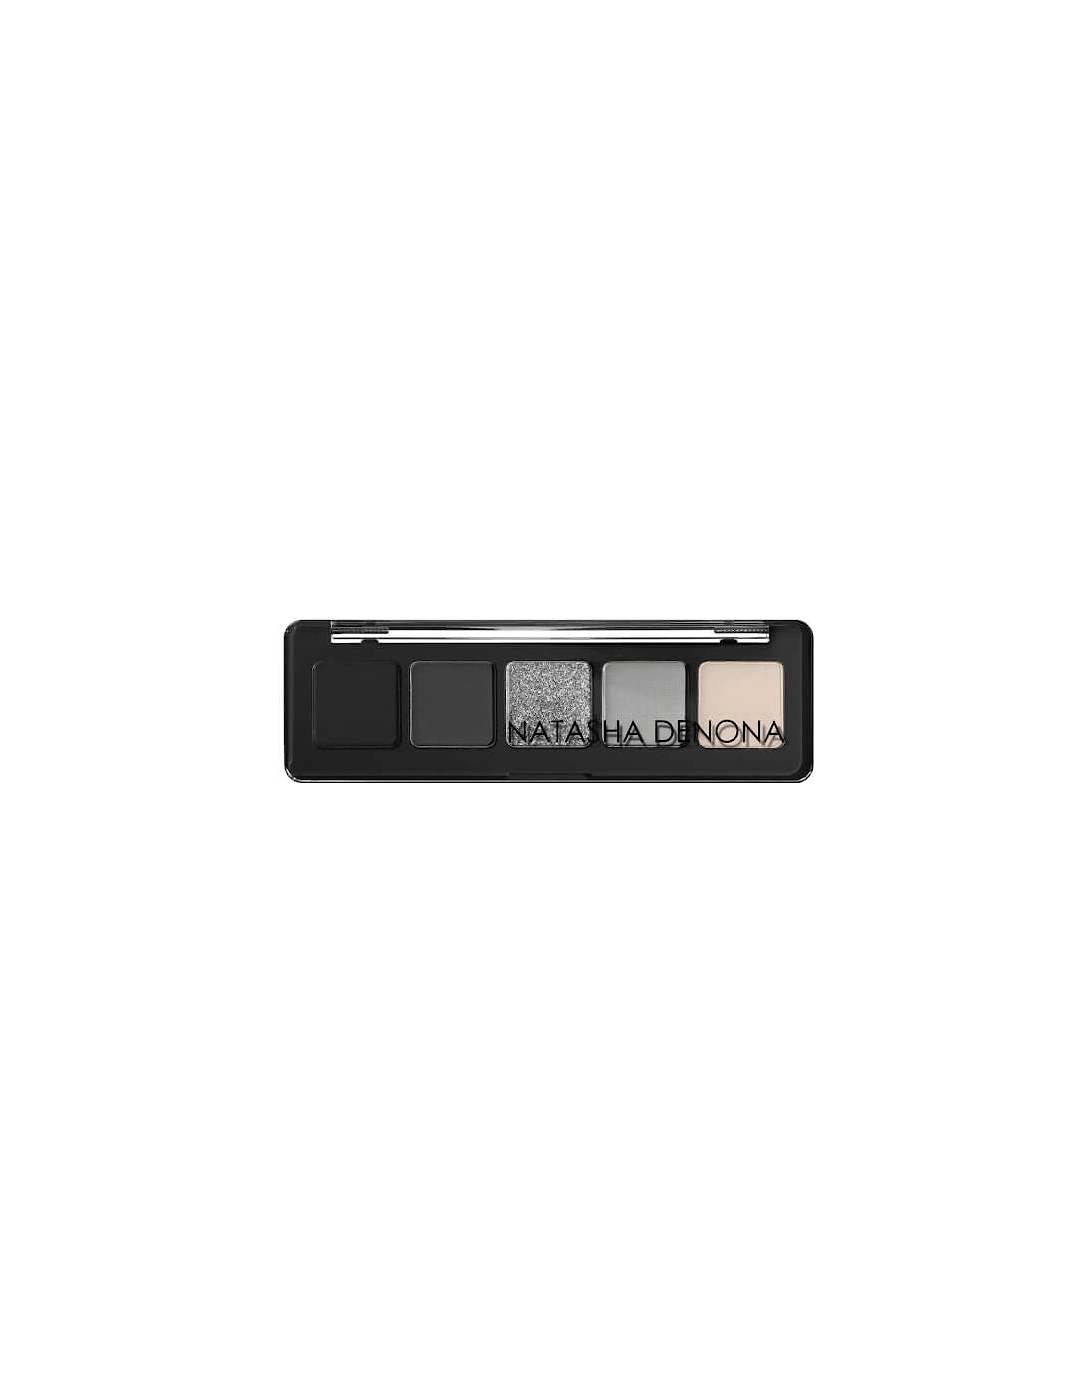 Mini Xenon Eyeshadow Palette, 2 of 1